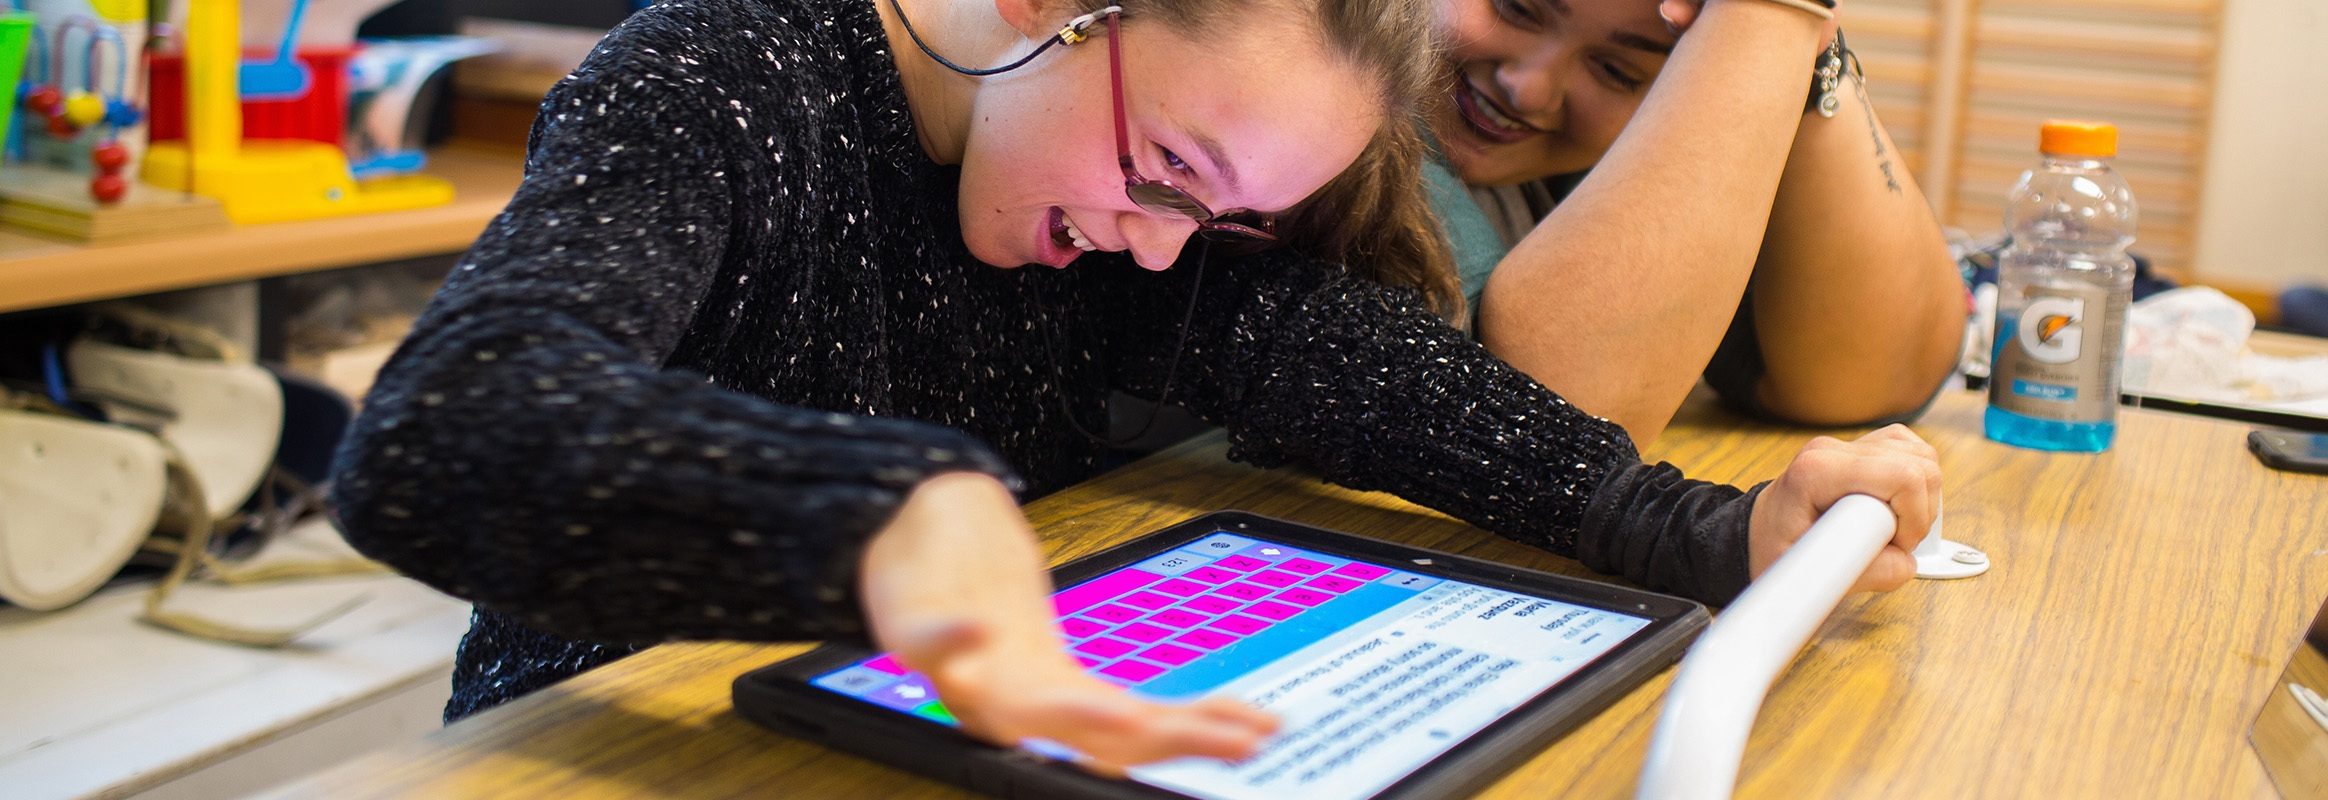 Girl using Keeble iPad keyboard in classroom